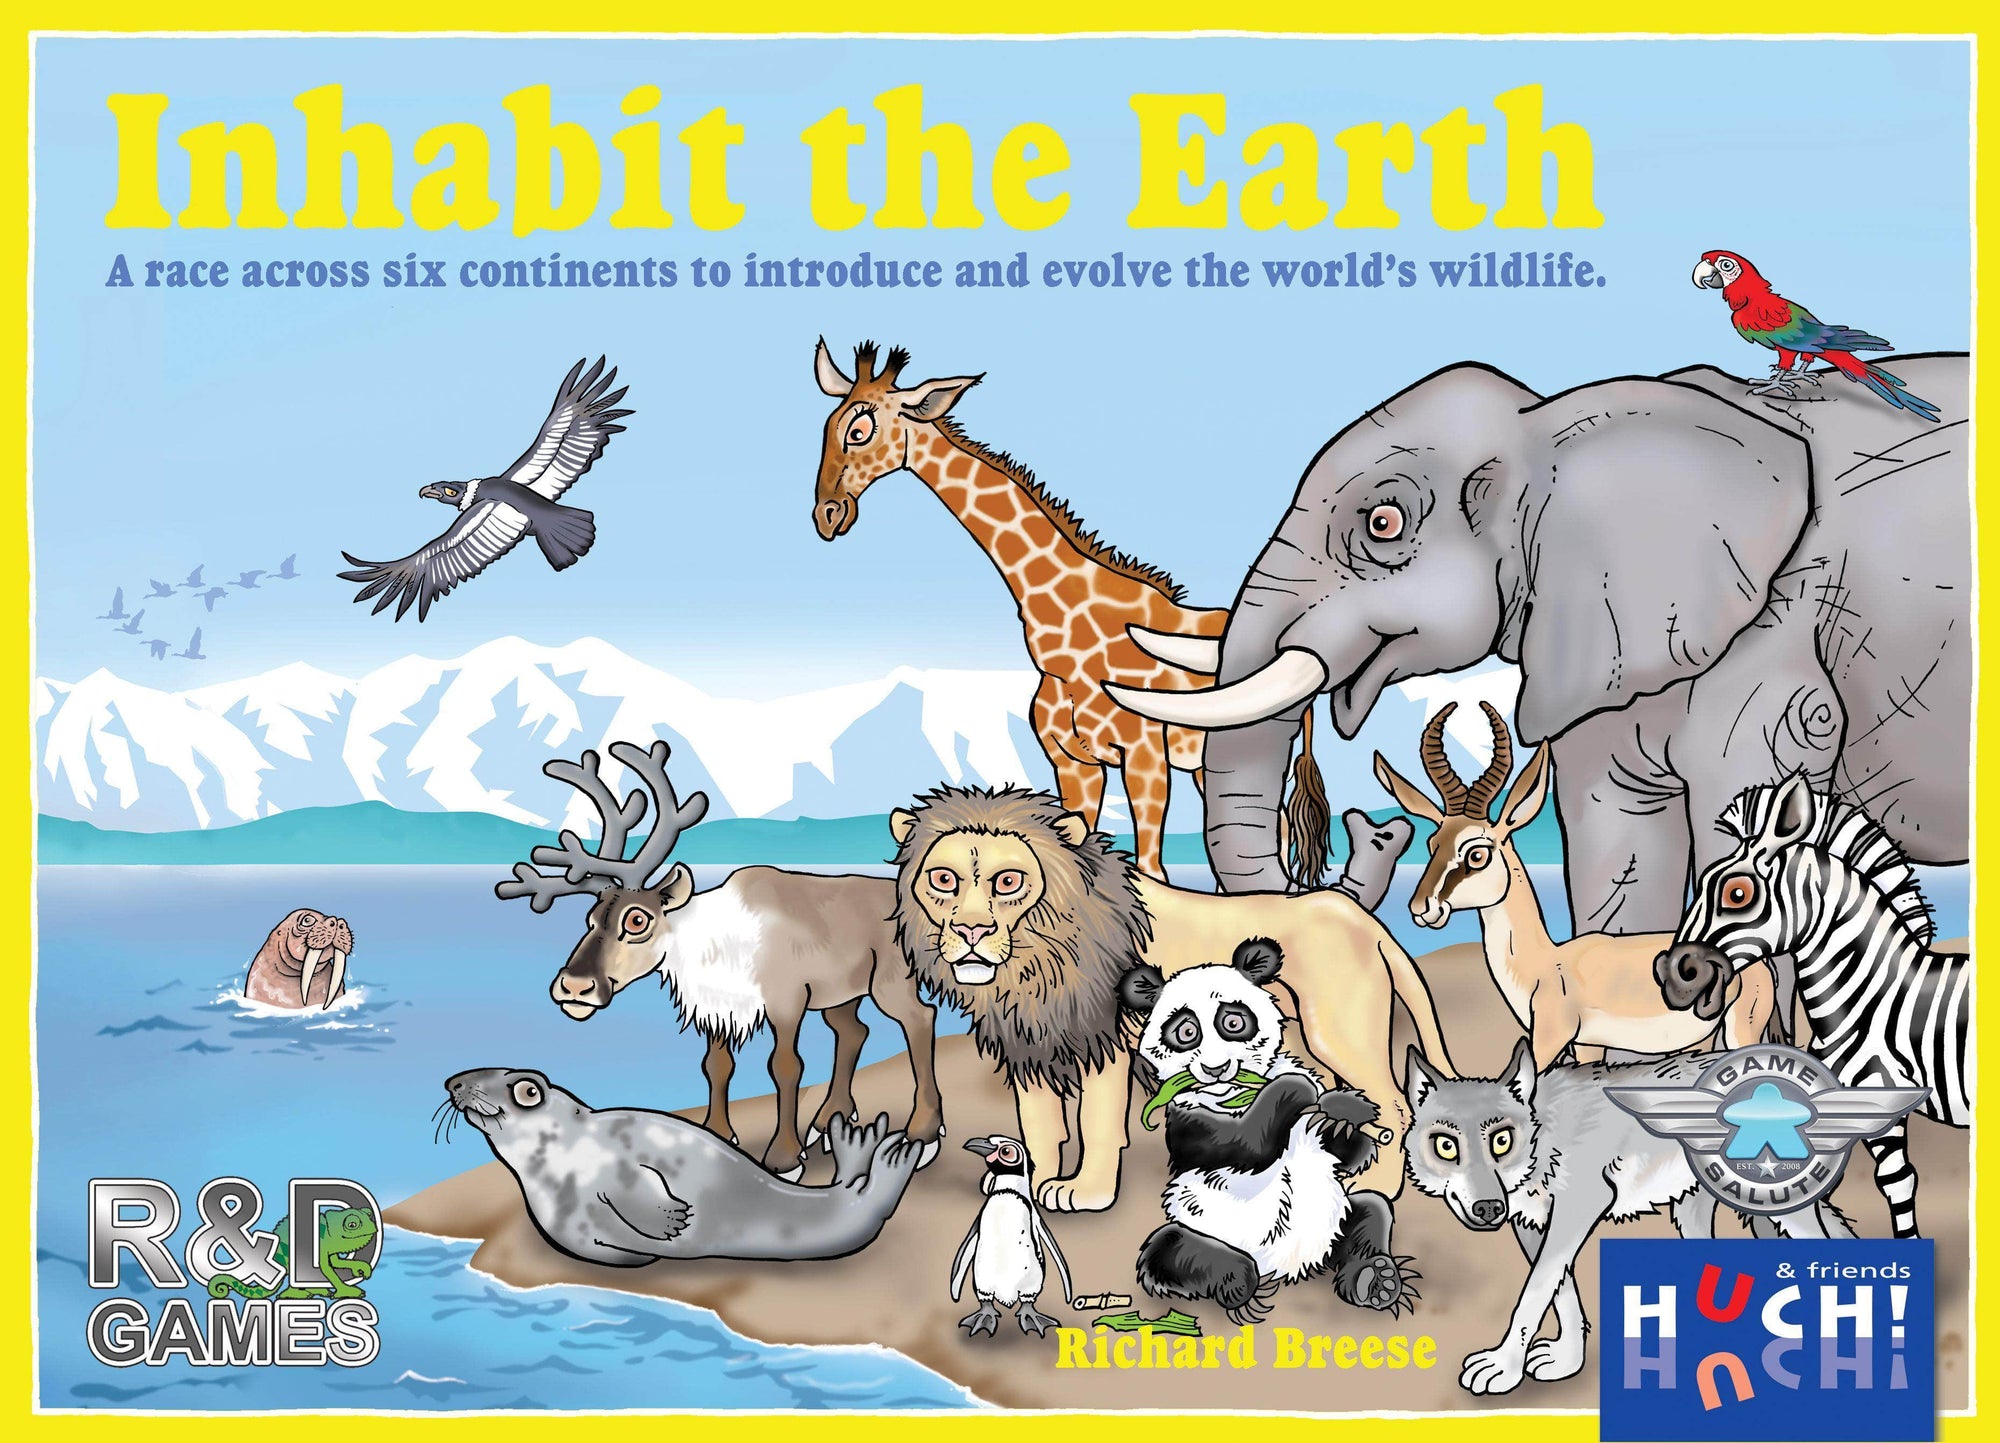 Habitar o jogo de tabuleiro da Terra (Kickstarter Special) Kickstarter R&D Games KS800175A